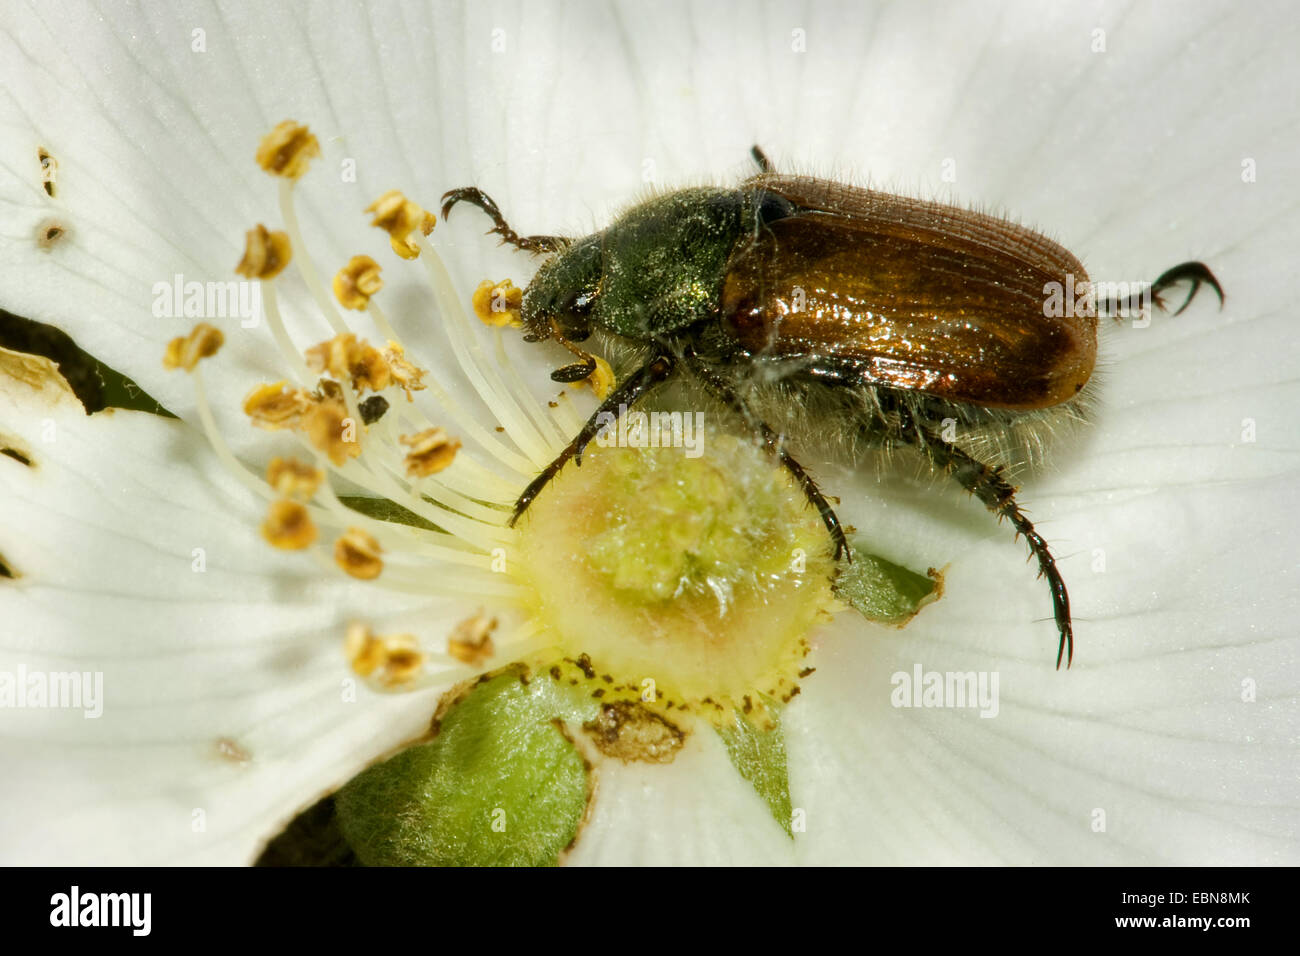 Jardín, jardín chafer Escarabajo (Phyllopertha horticola de follaje, Phylloperta horticola), alimentándose de polen de una flor, Alemania Foto de stock